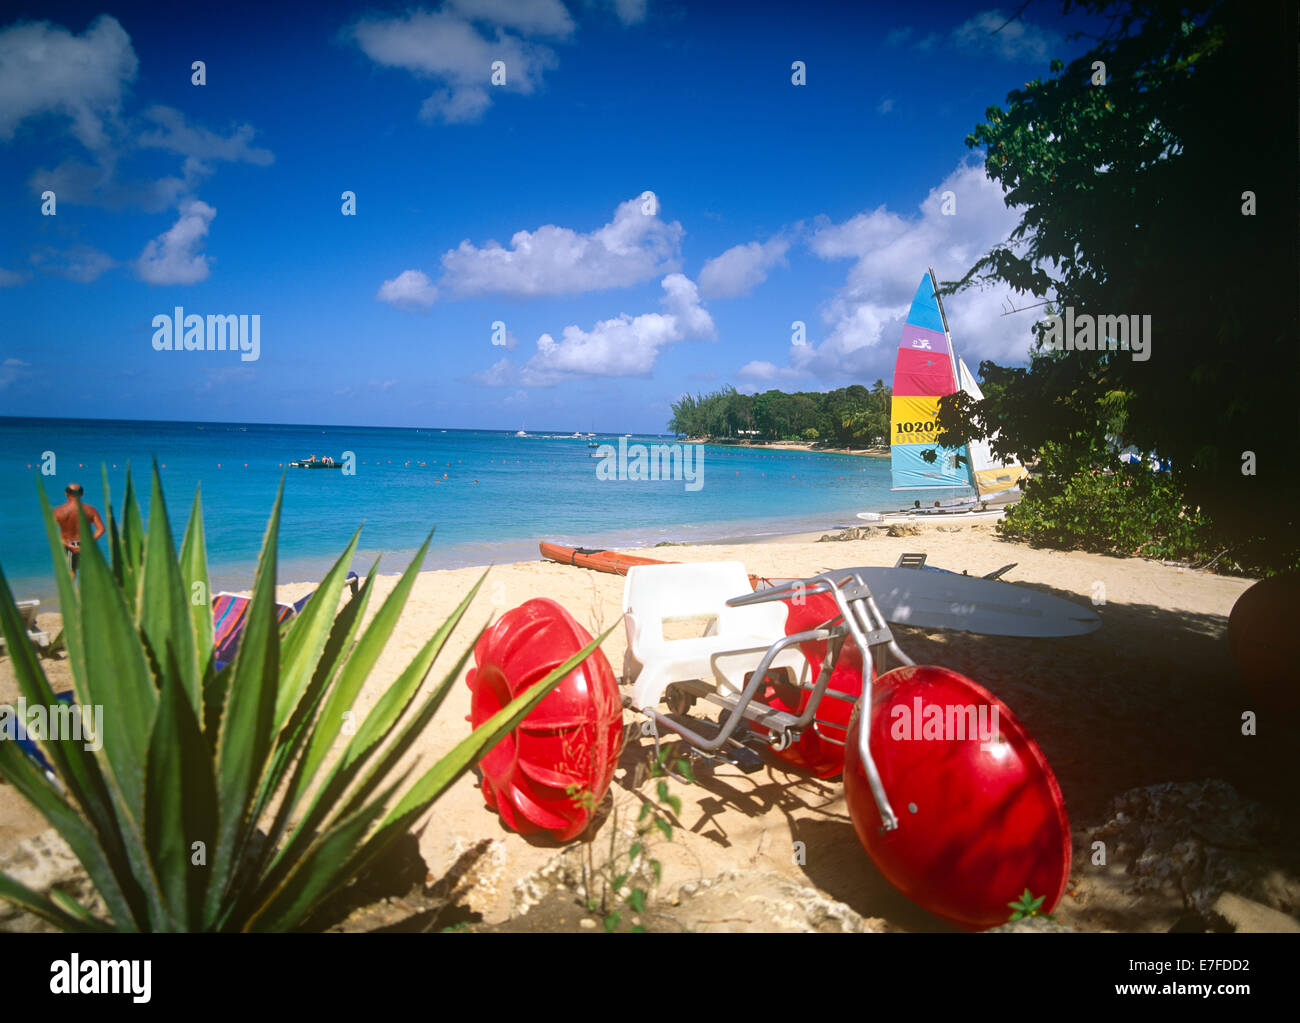 La costa oeste de la Bahía de manoe Playa Caribe Barbados Foto de stock